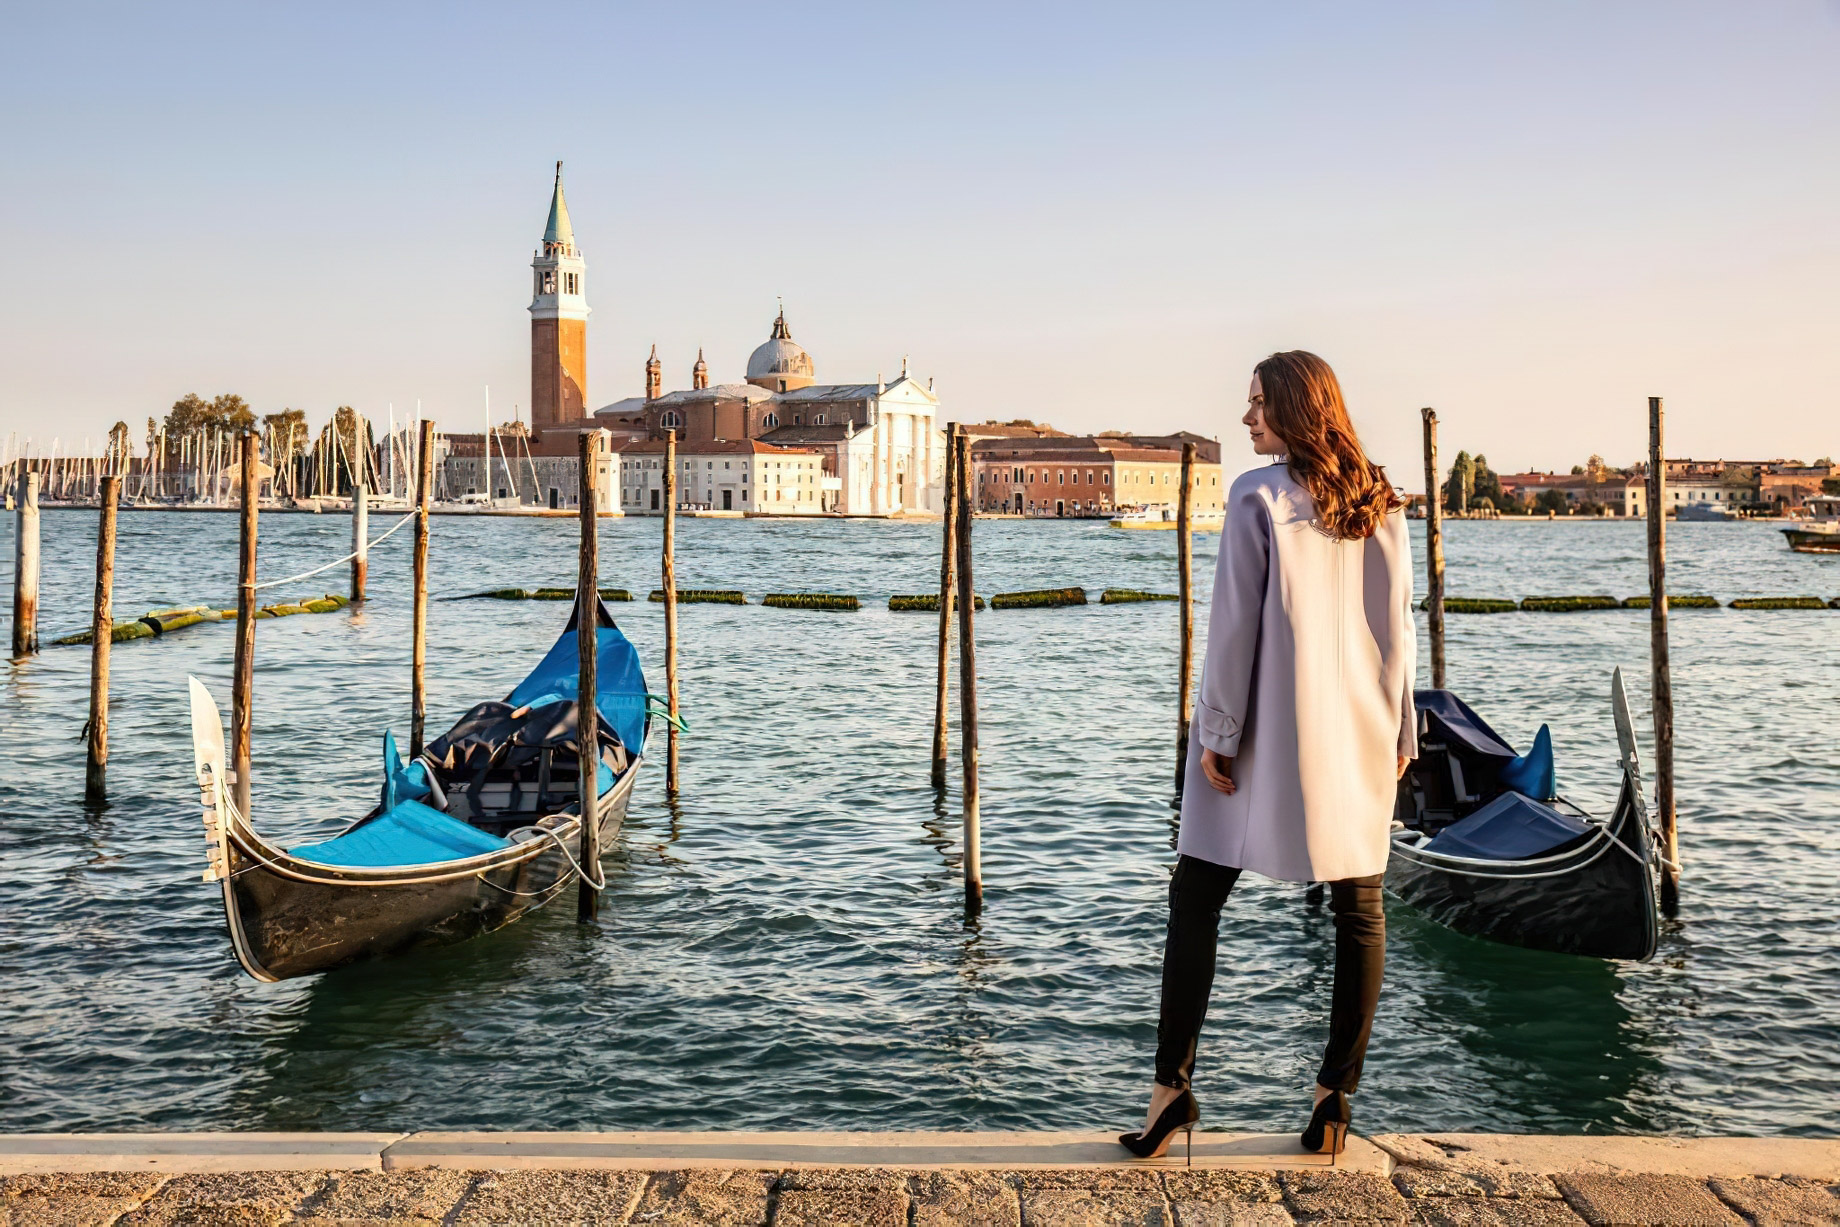 Baglioni Hotel Luna, Venezia – Venice, Italy – Gondola View